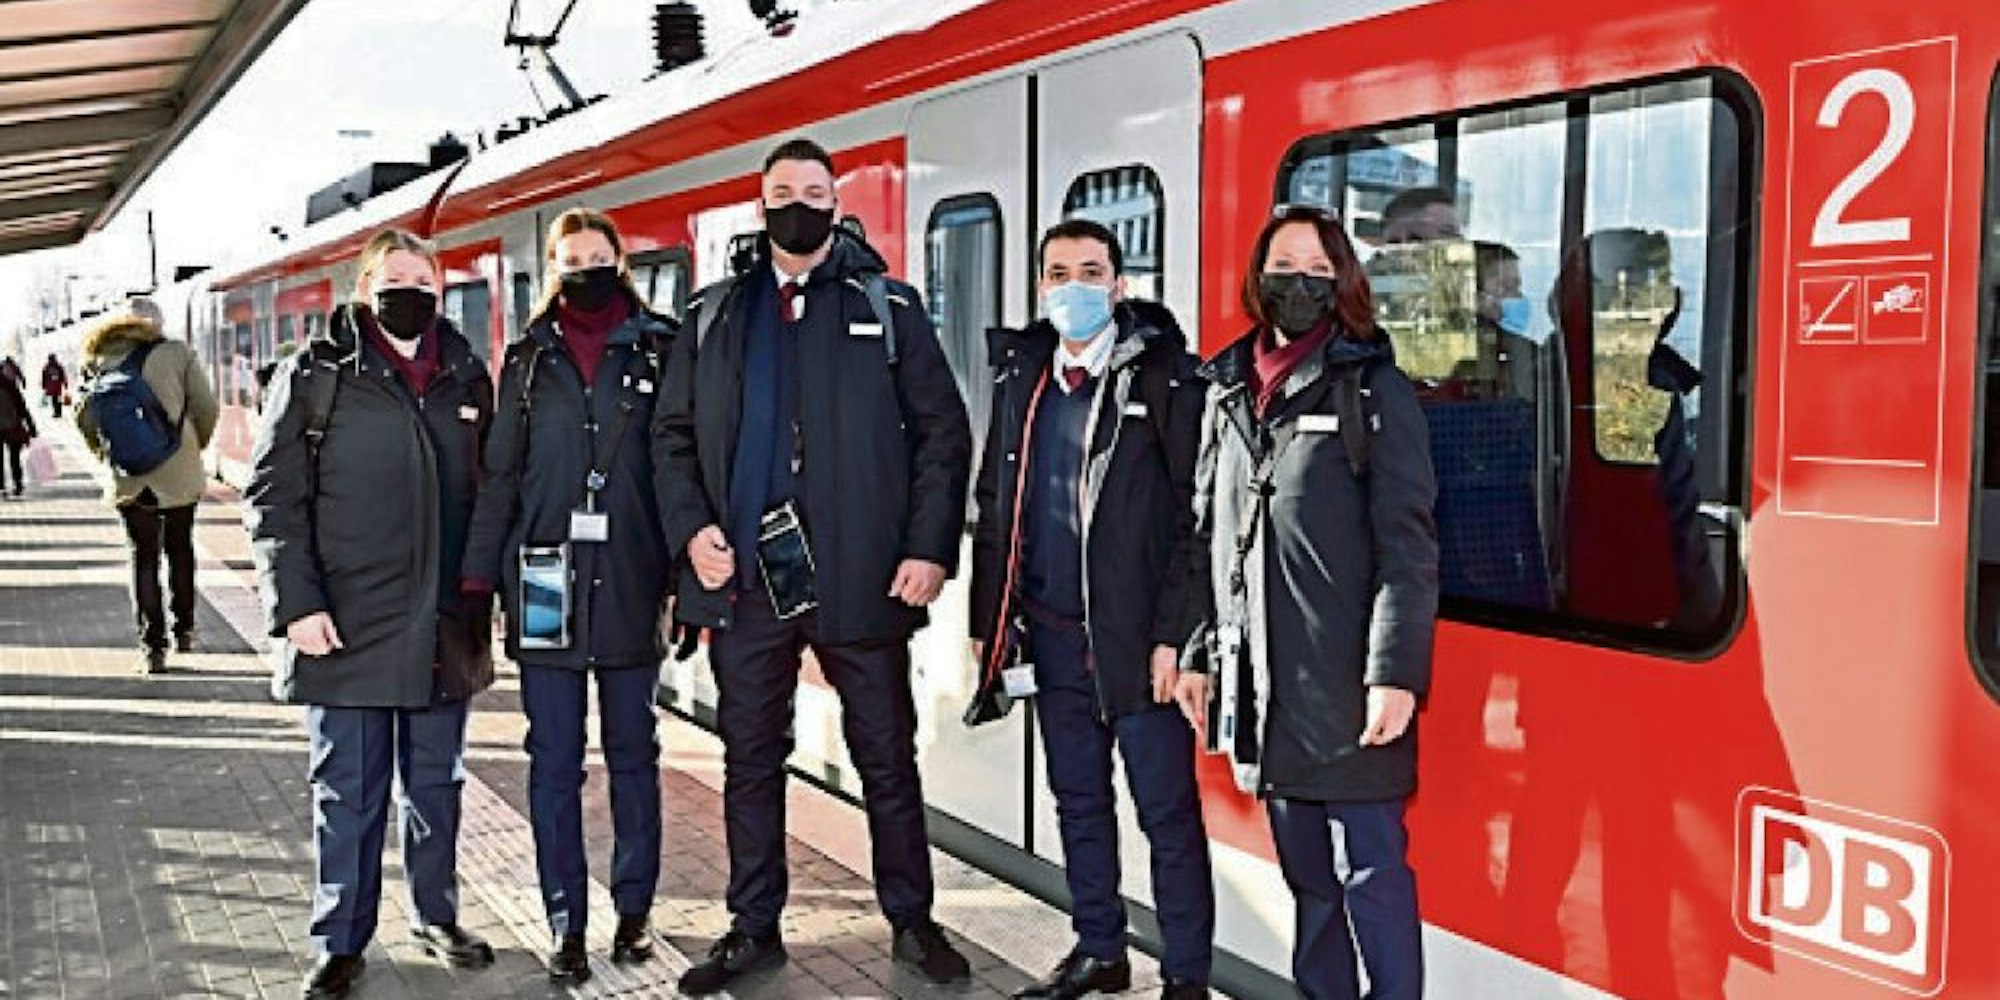 Kontrolle der Maskenpflicht: In gemeinsamer Mission waren gestern Ordnungskräfte der Stadt Bergisch Gladbach, der Bundespolizei, der Deutschen Bahn sowie DB-Kundenbetreuer am Bahnhof im Einsatz.